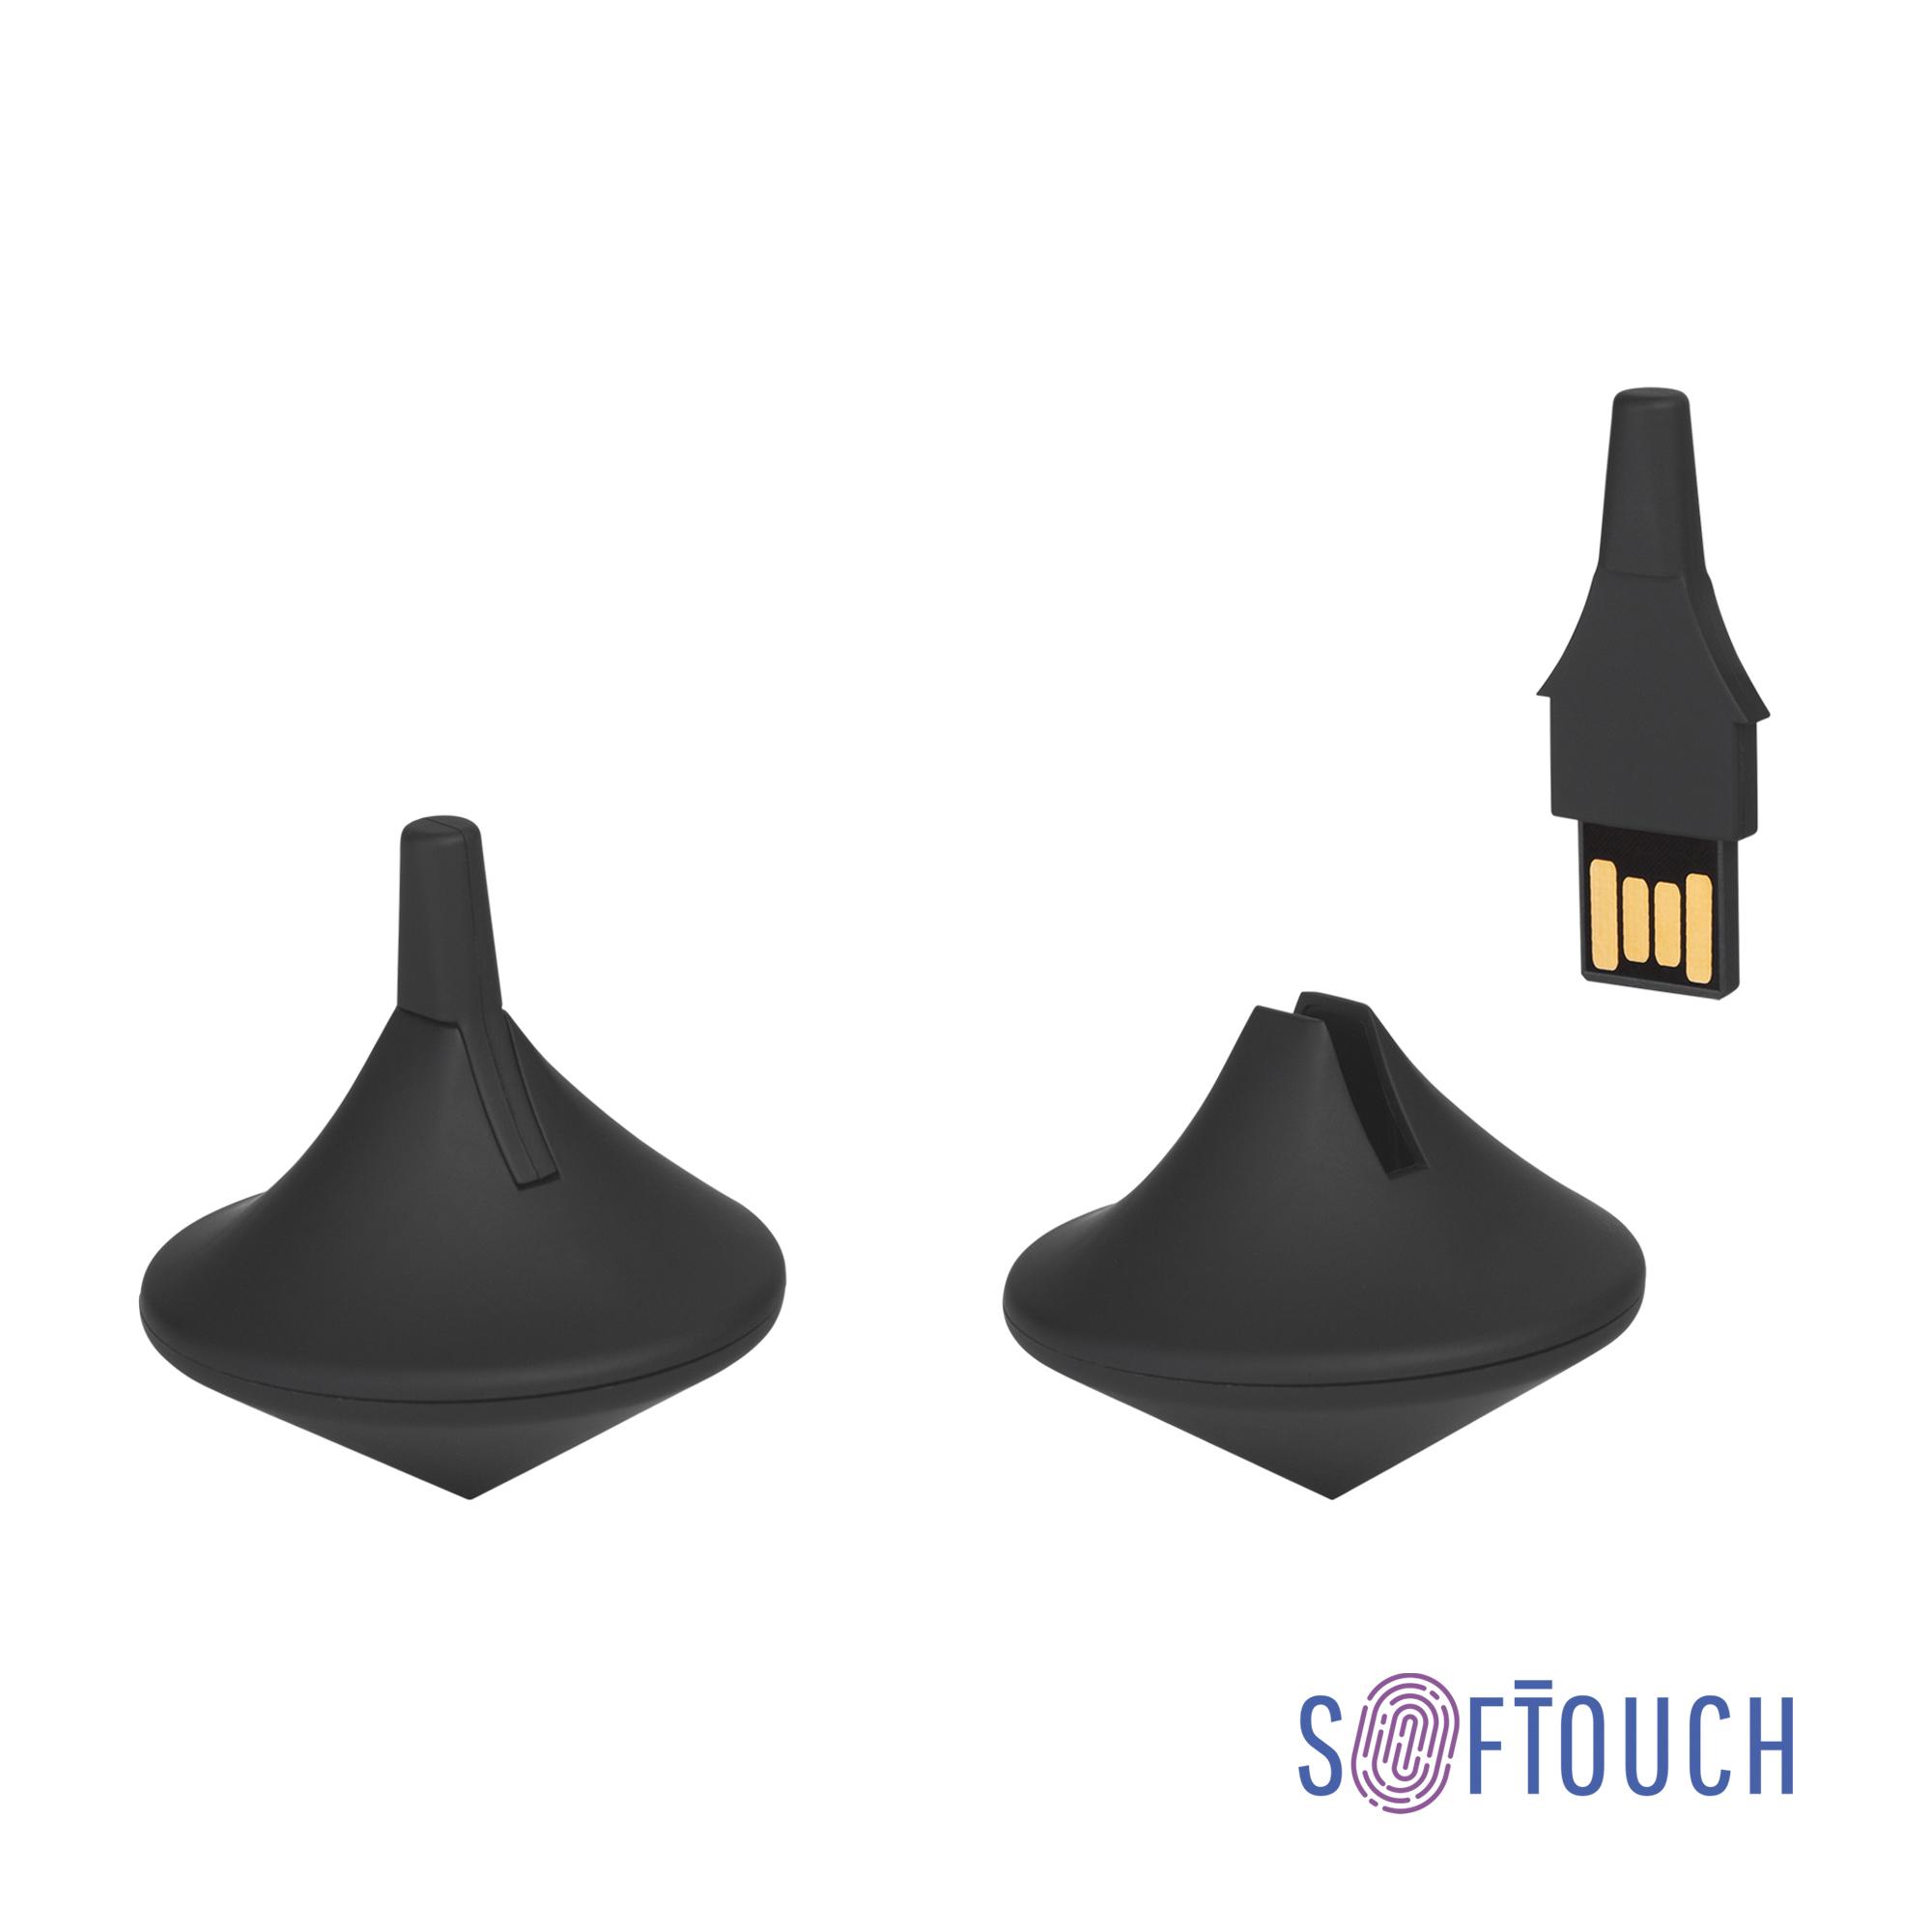 Флеш-карта-антистресс "Volchok", объем памяти 16GB, темно-синий, покрытие soft touch, цвет черный